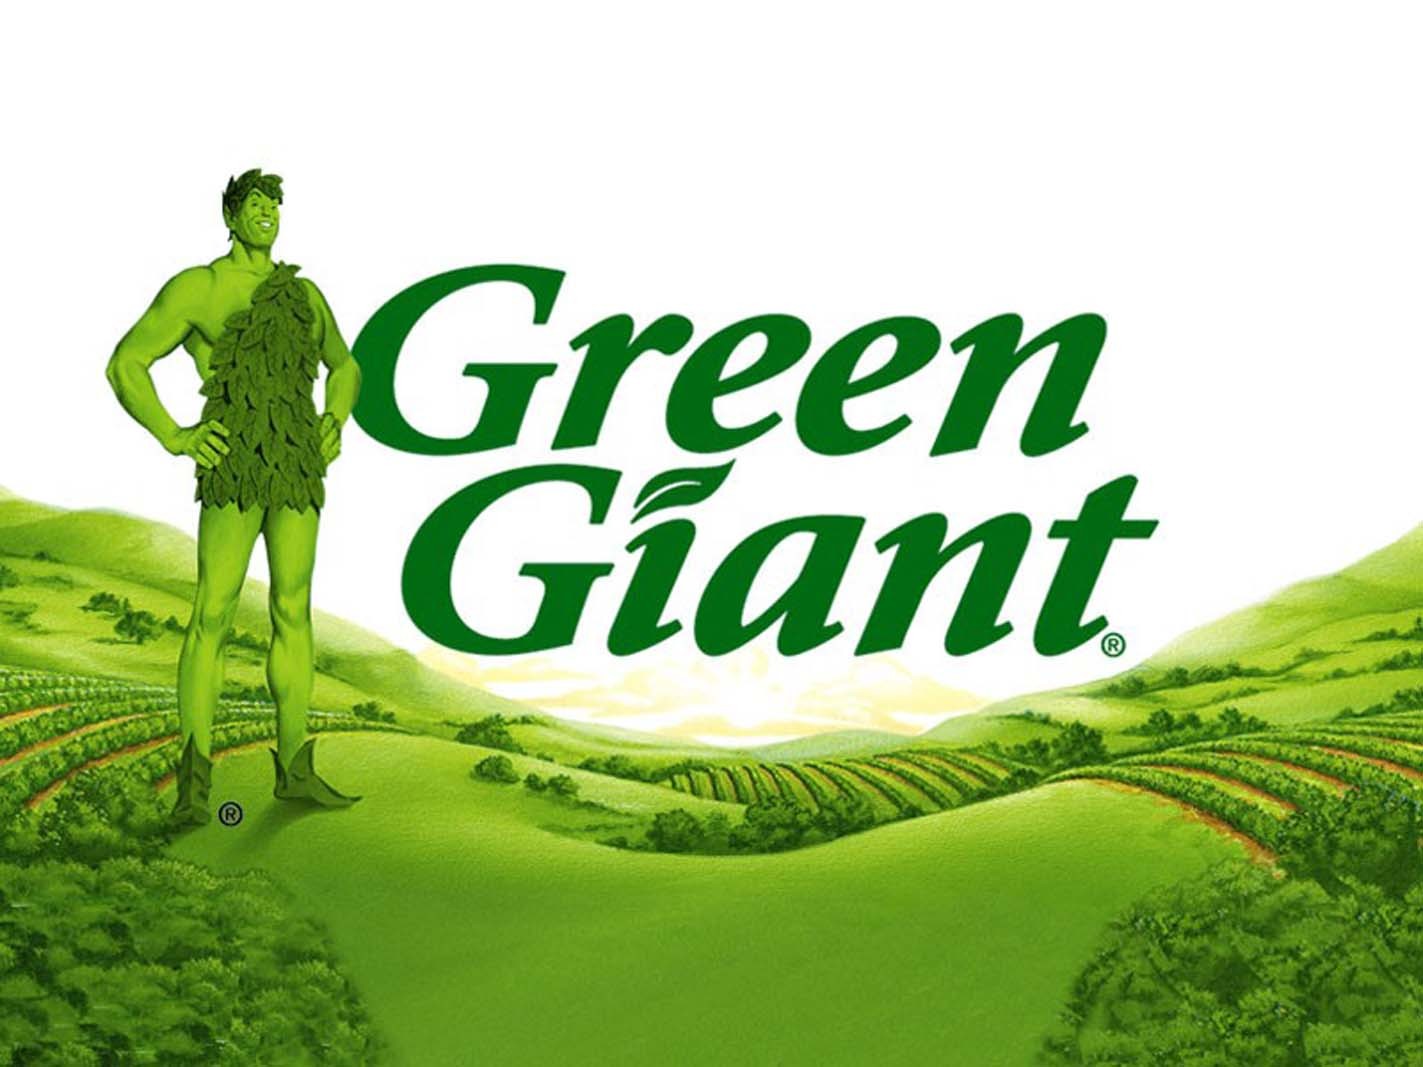 Семь зеленых людей. Грин гигант Green giant. Jolly Green giant Лео Бернетт. Jolly Green giant – веселый зеленый великан. Лео Бернетт реклама Green giant.